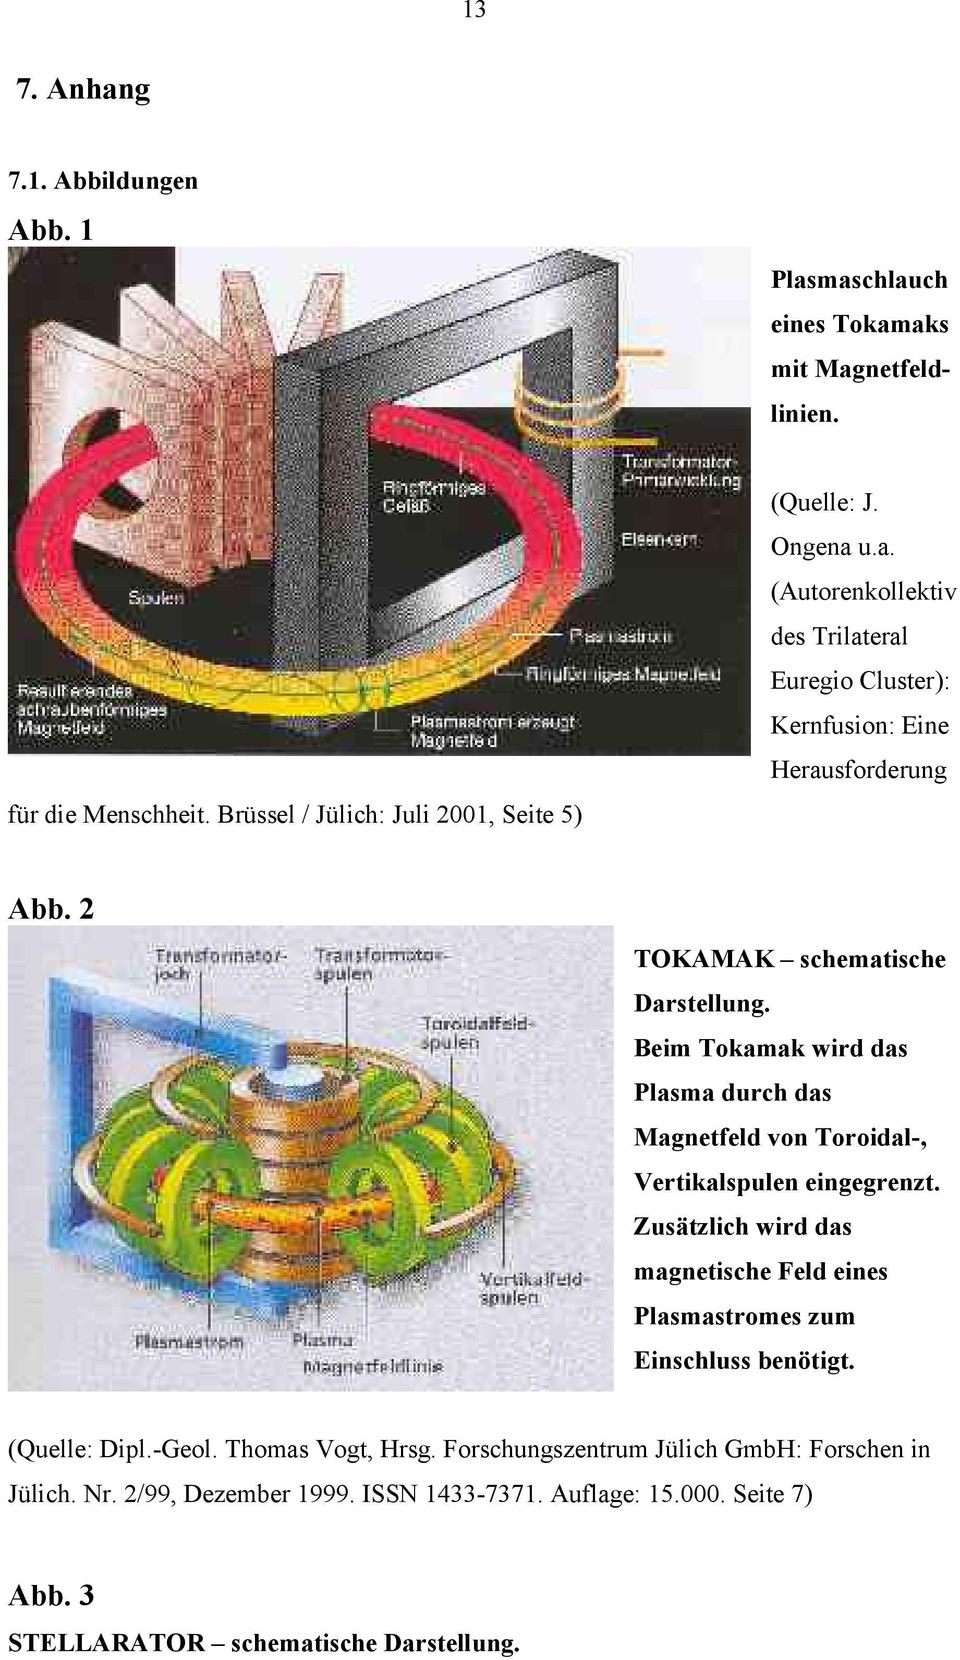 Beim Tokamak wird das Plasma durch das Magnetfeld von Toroidal-, Vertikalspulen eingegrenzt.